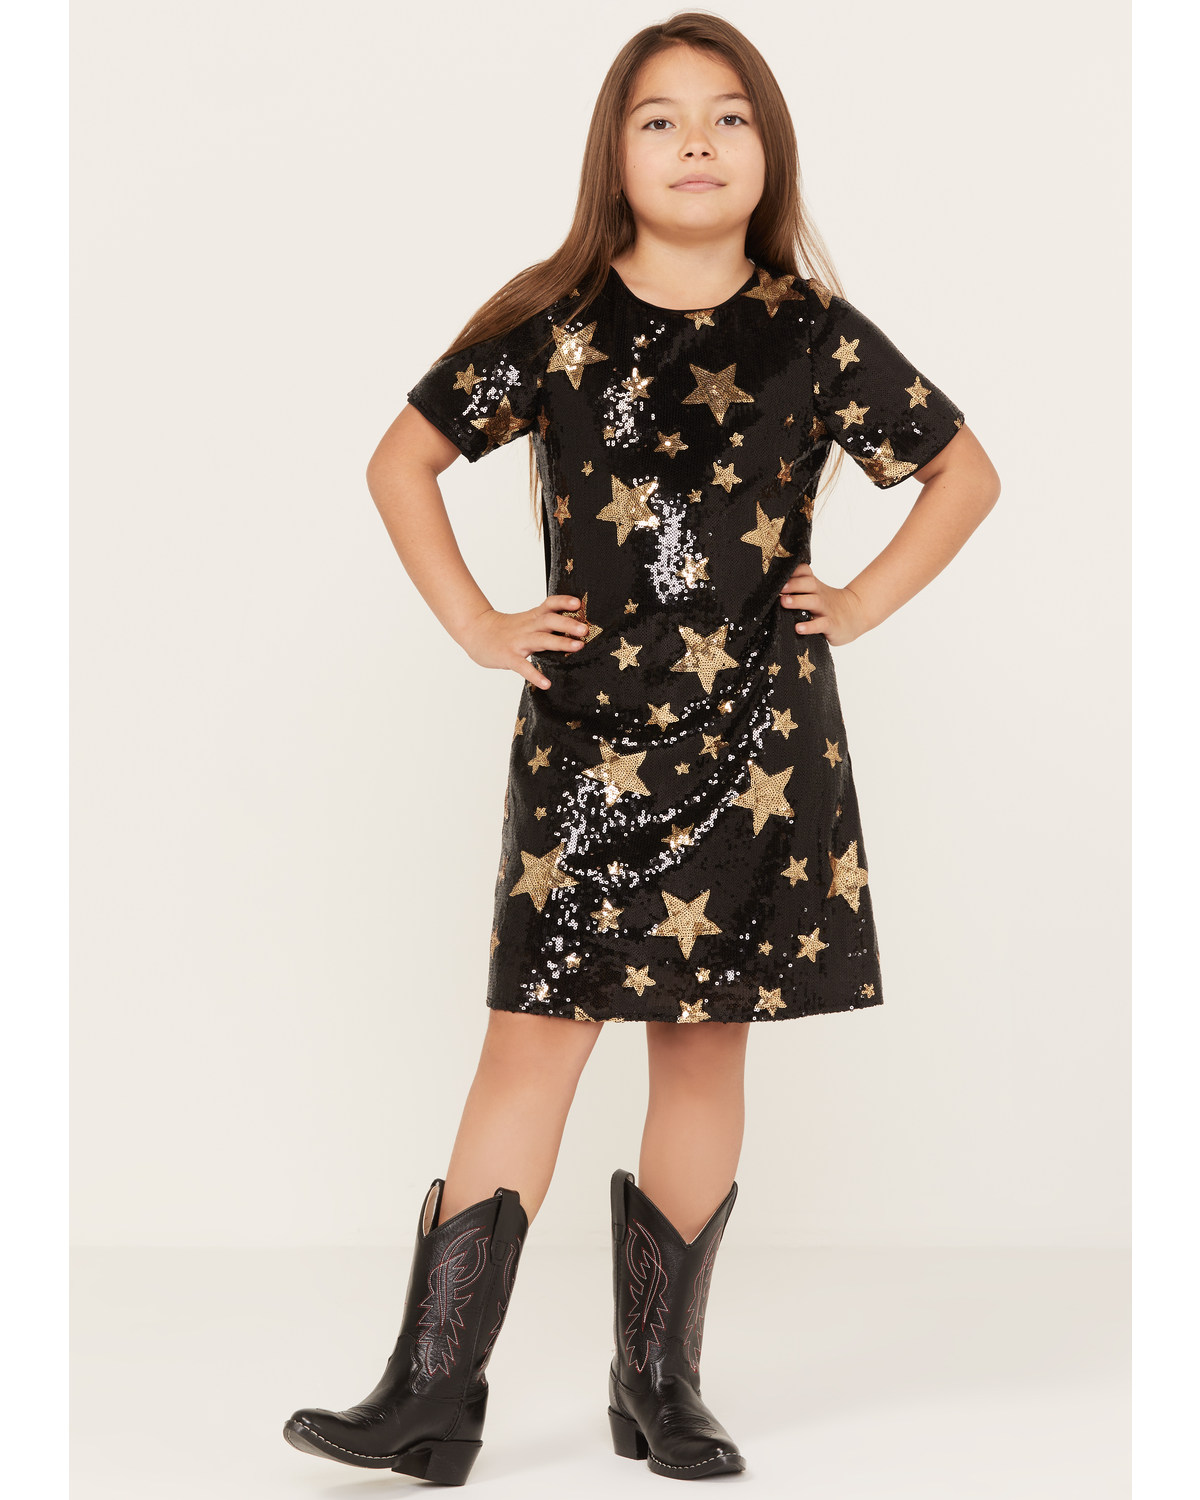 Hayden LA Girls' Star Print Sequin Dress